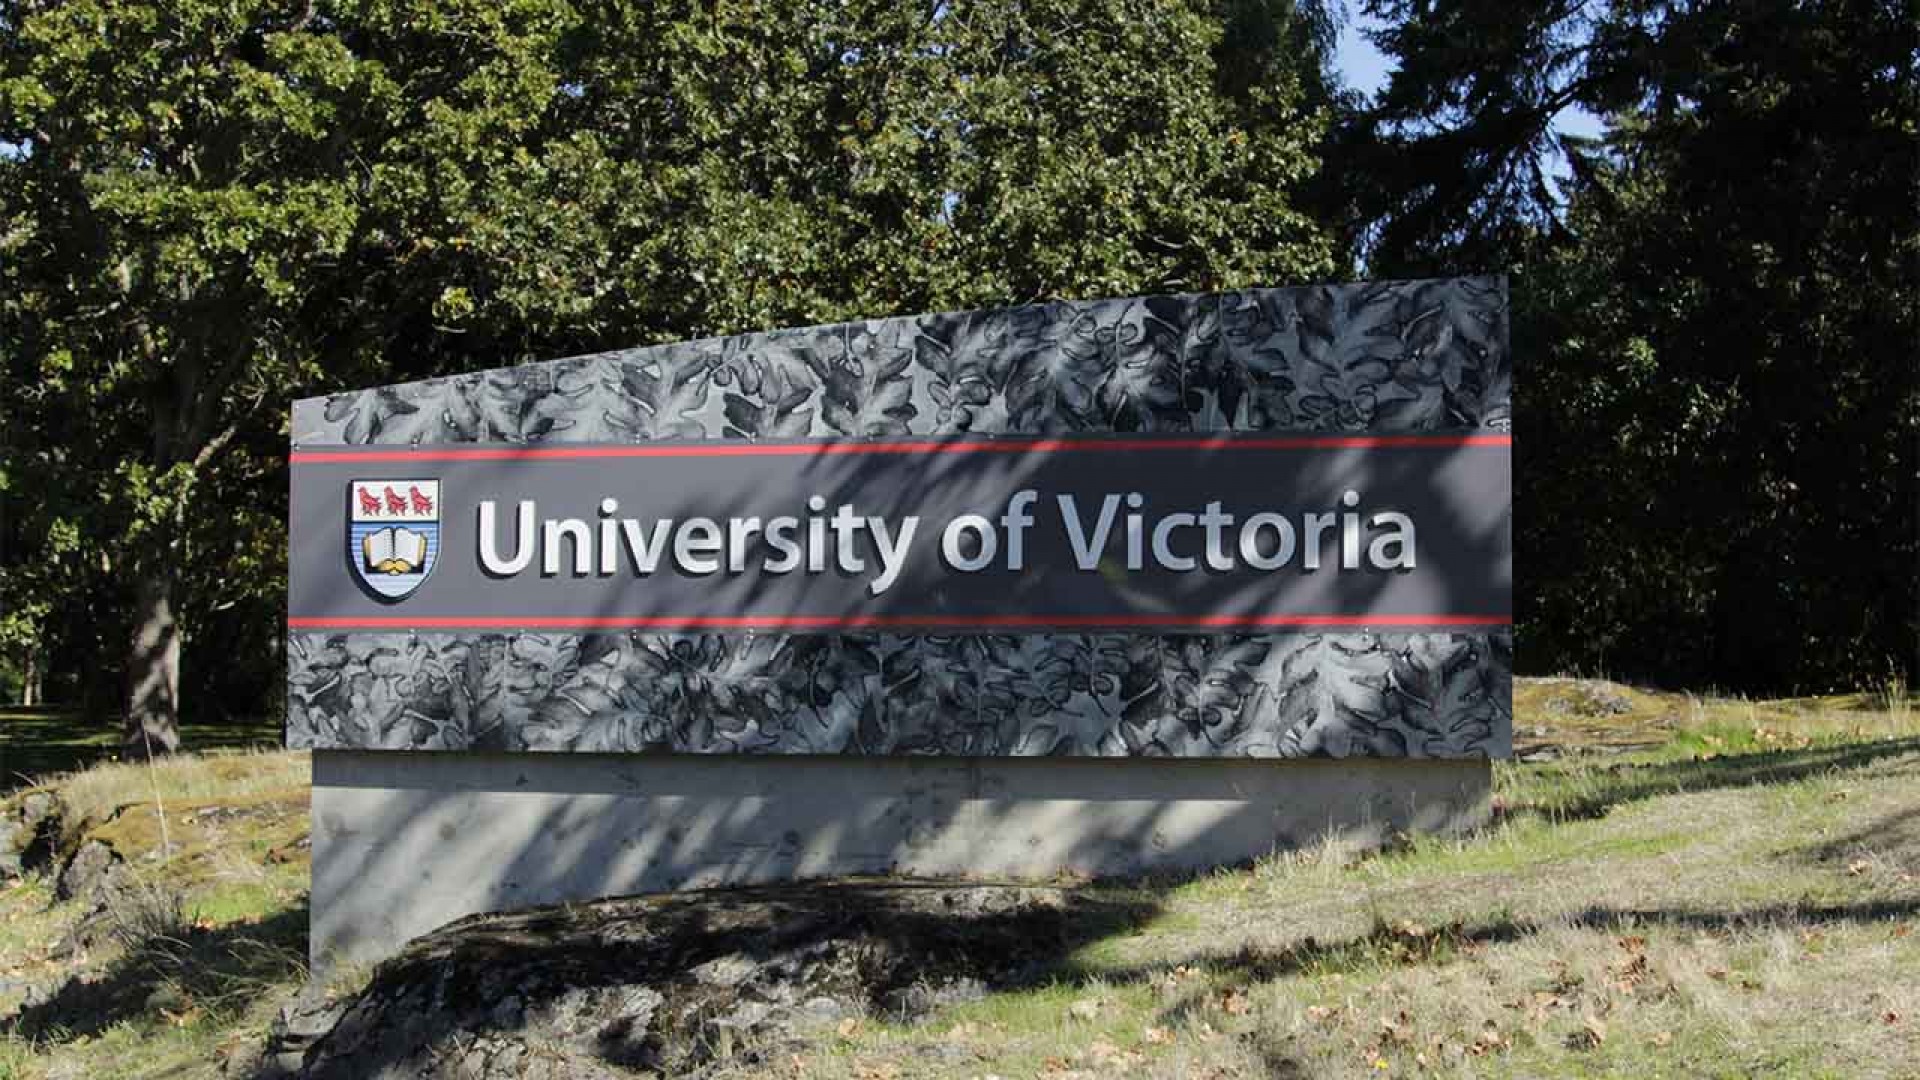 Du học ở Canada tại University of Victoria, tại sao không?